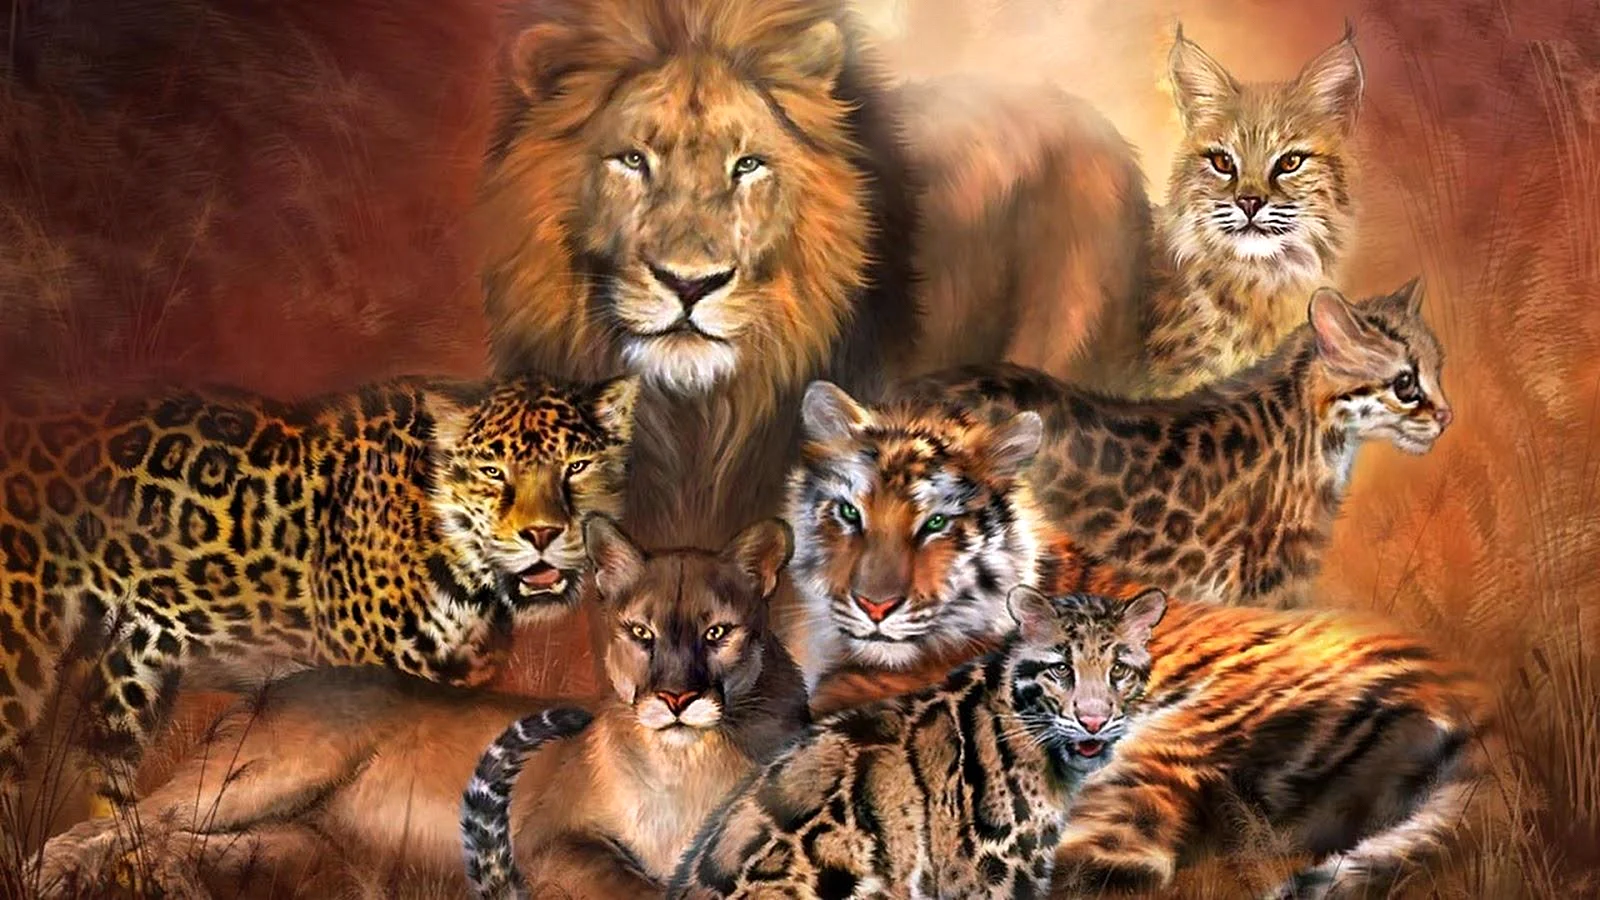 Leopard Tiger Wallpaper